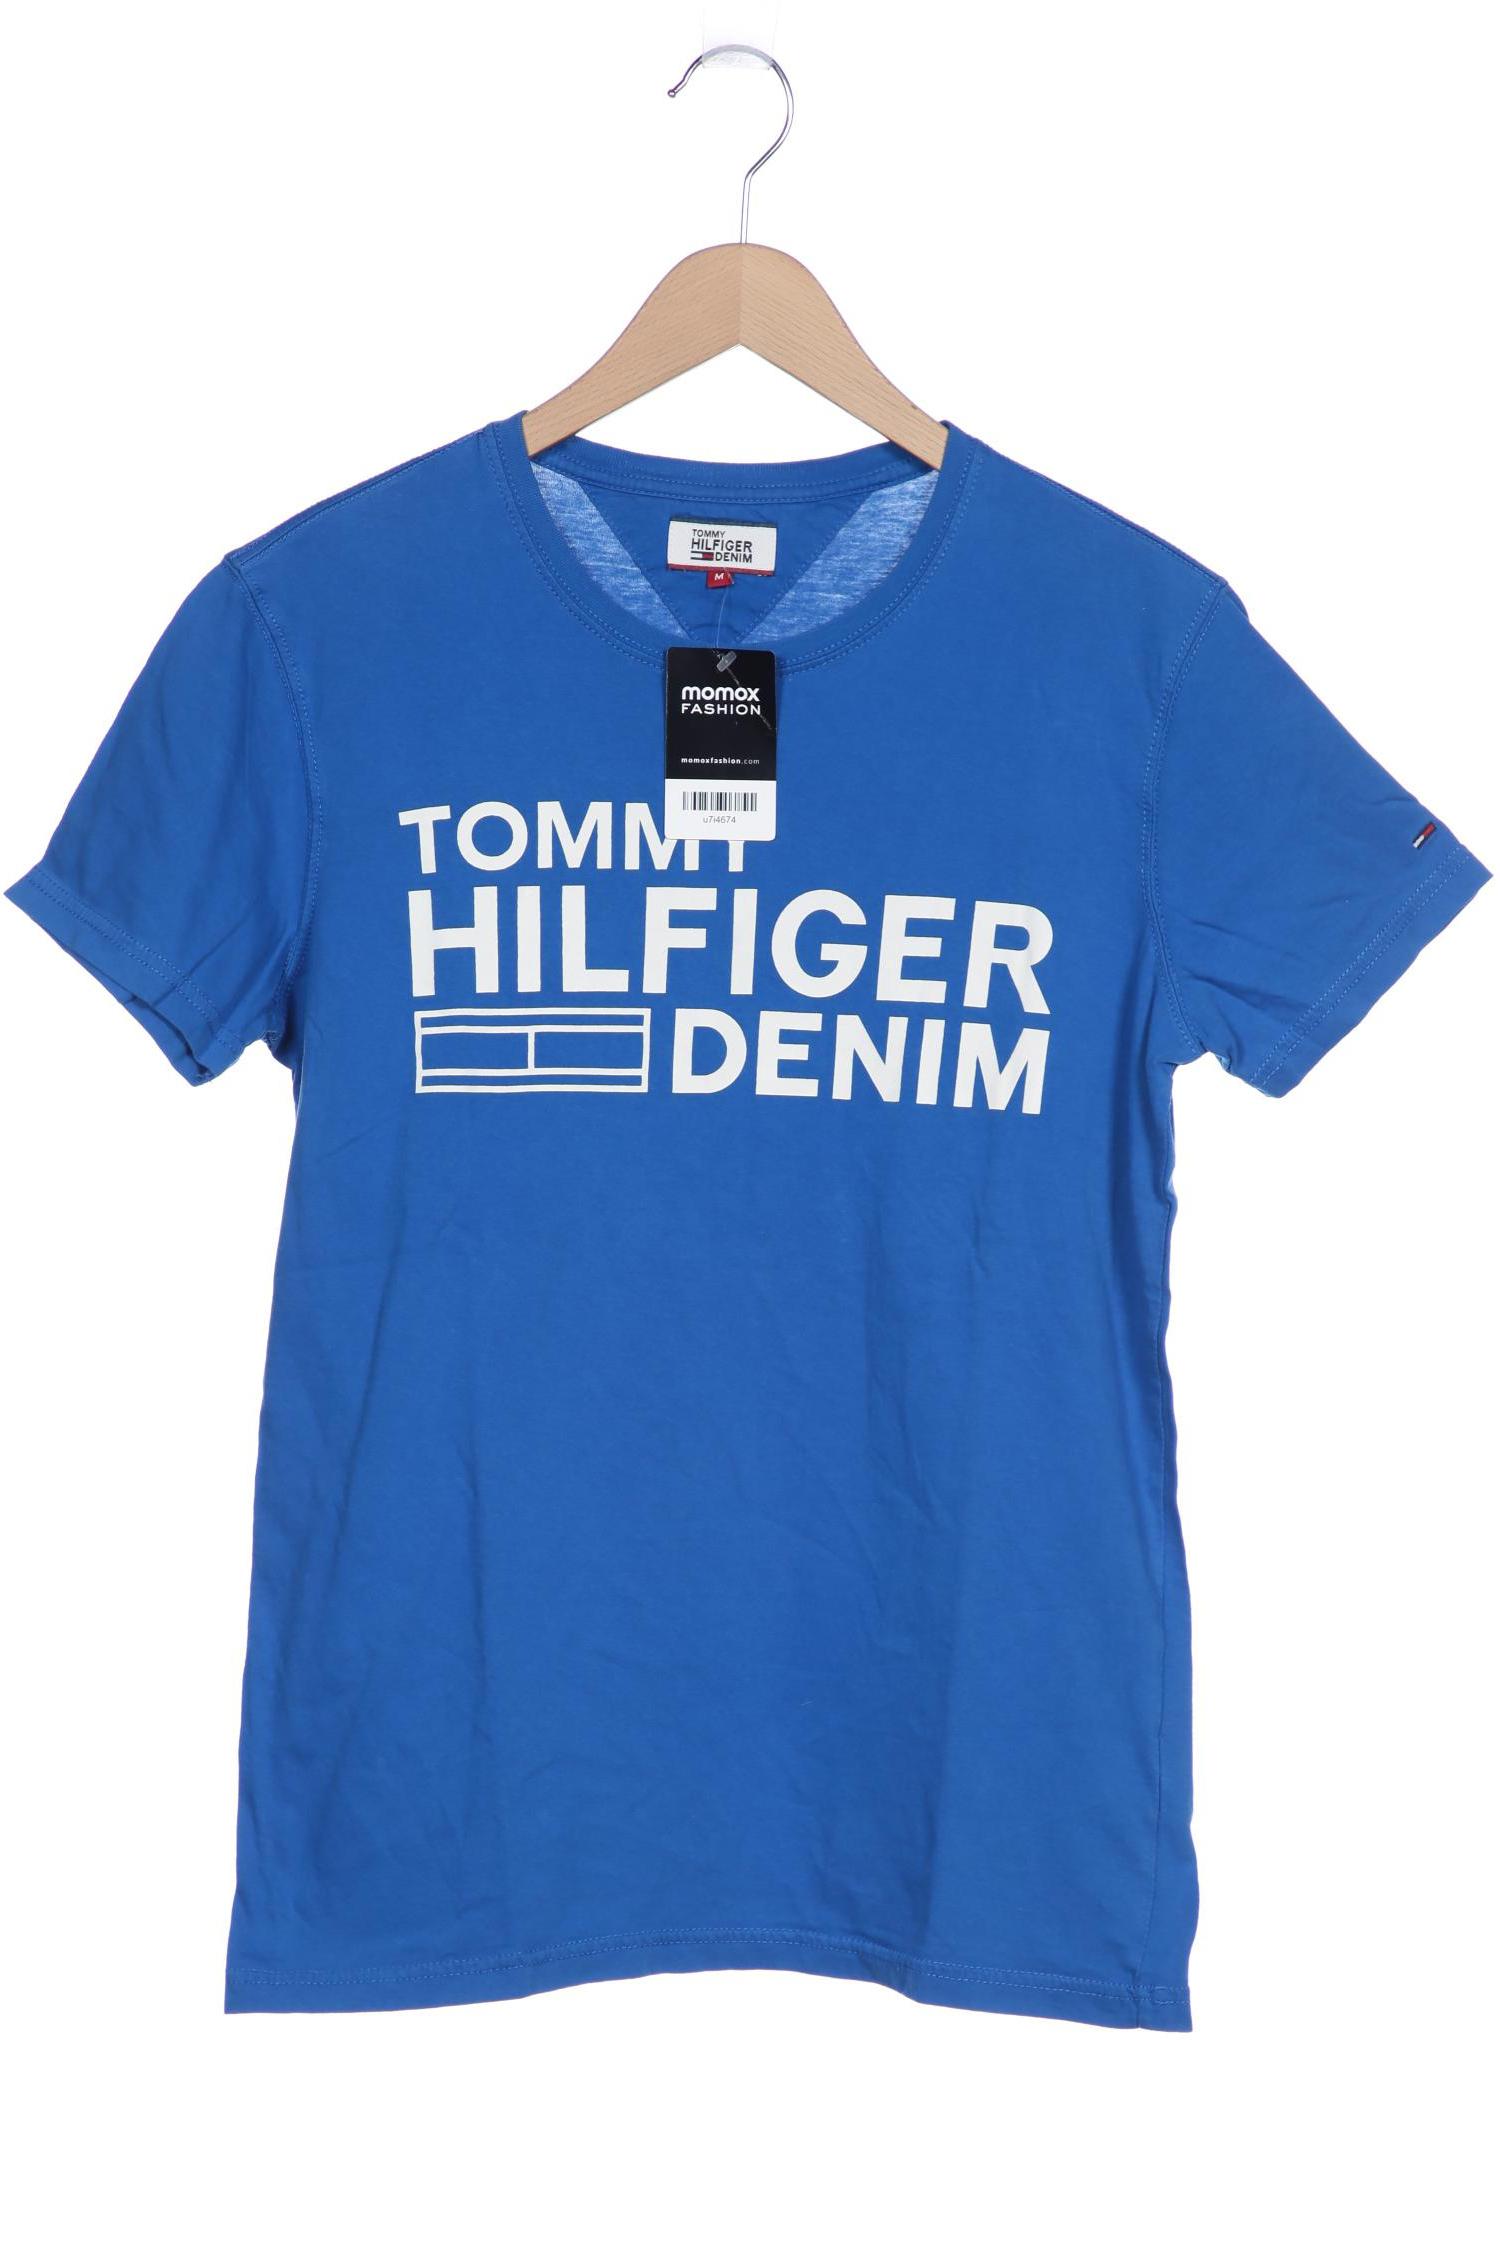 HILFIGER DENIM Herren T-Shirt, blau von Hilfiger Denim